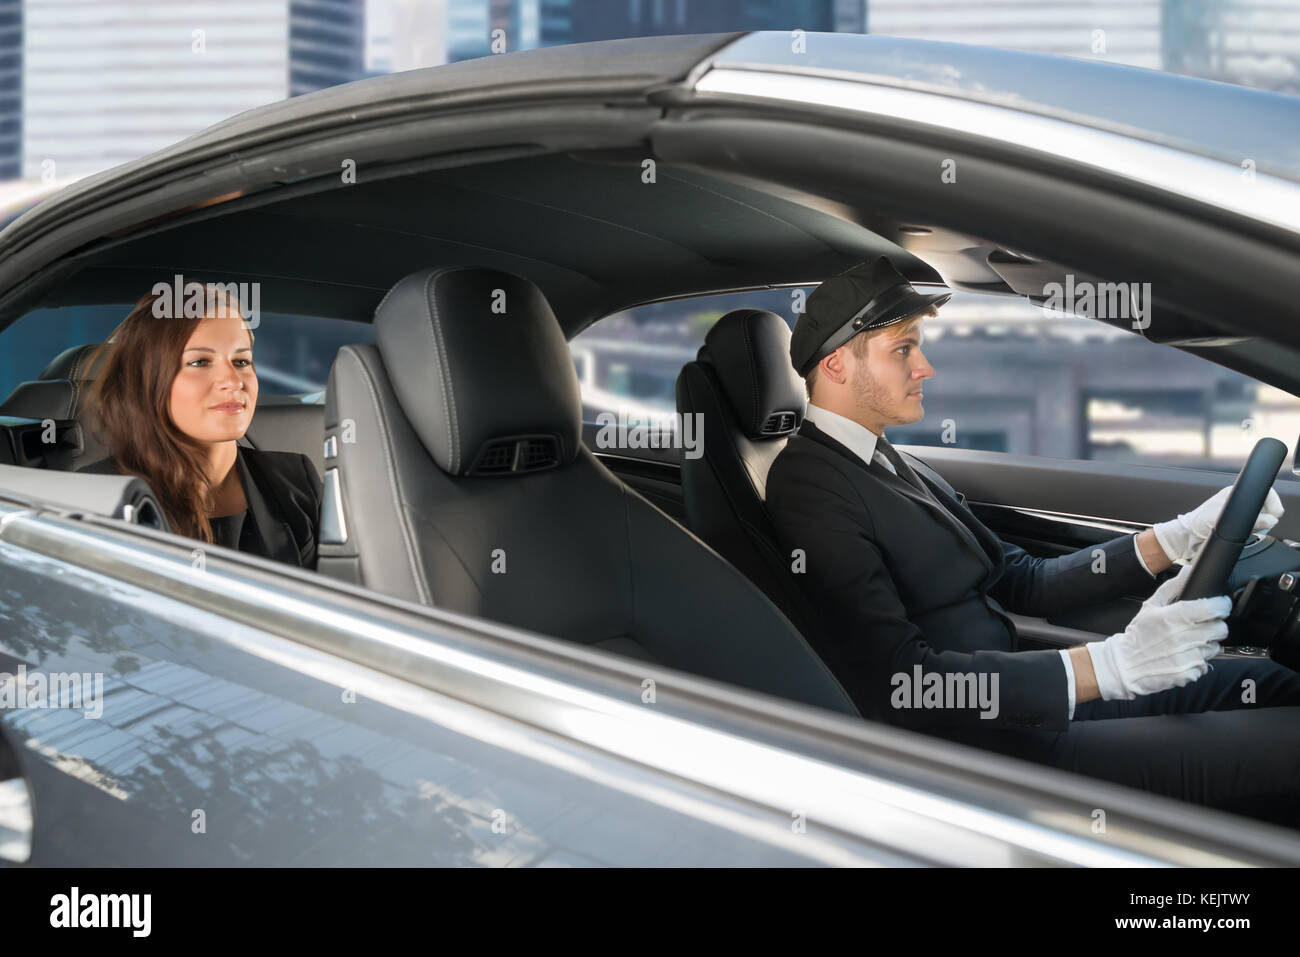 Schöne junge Frau reist in ein Auto mit Männlichen stattlichen Chauffeur Stockfoto